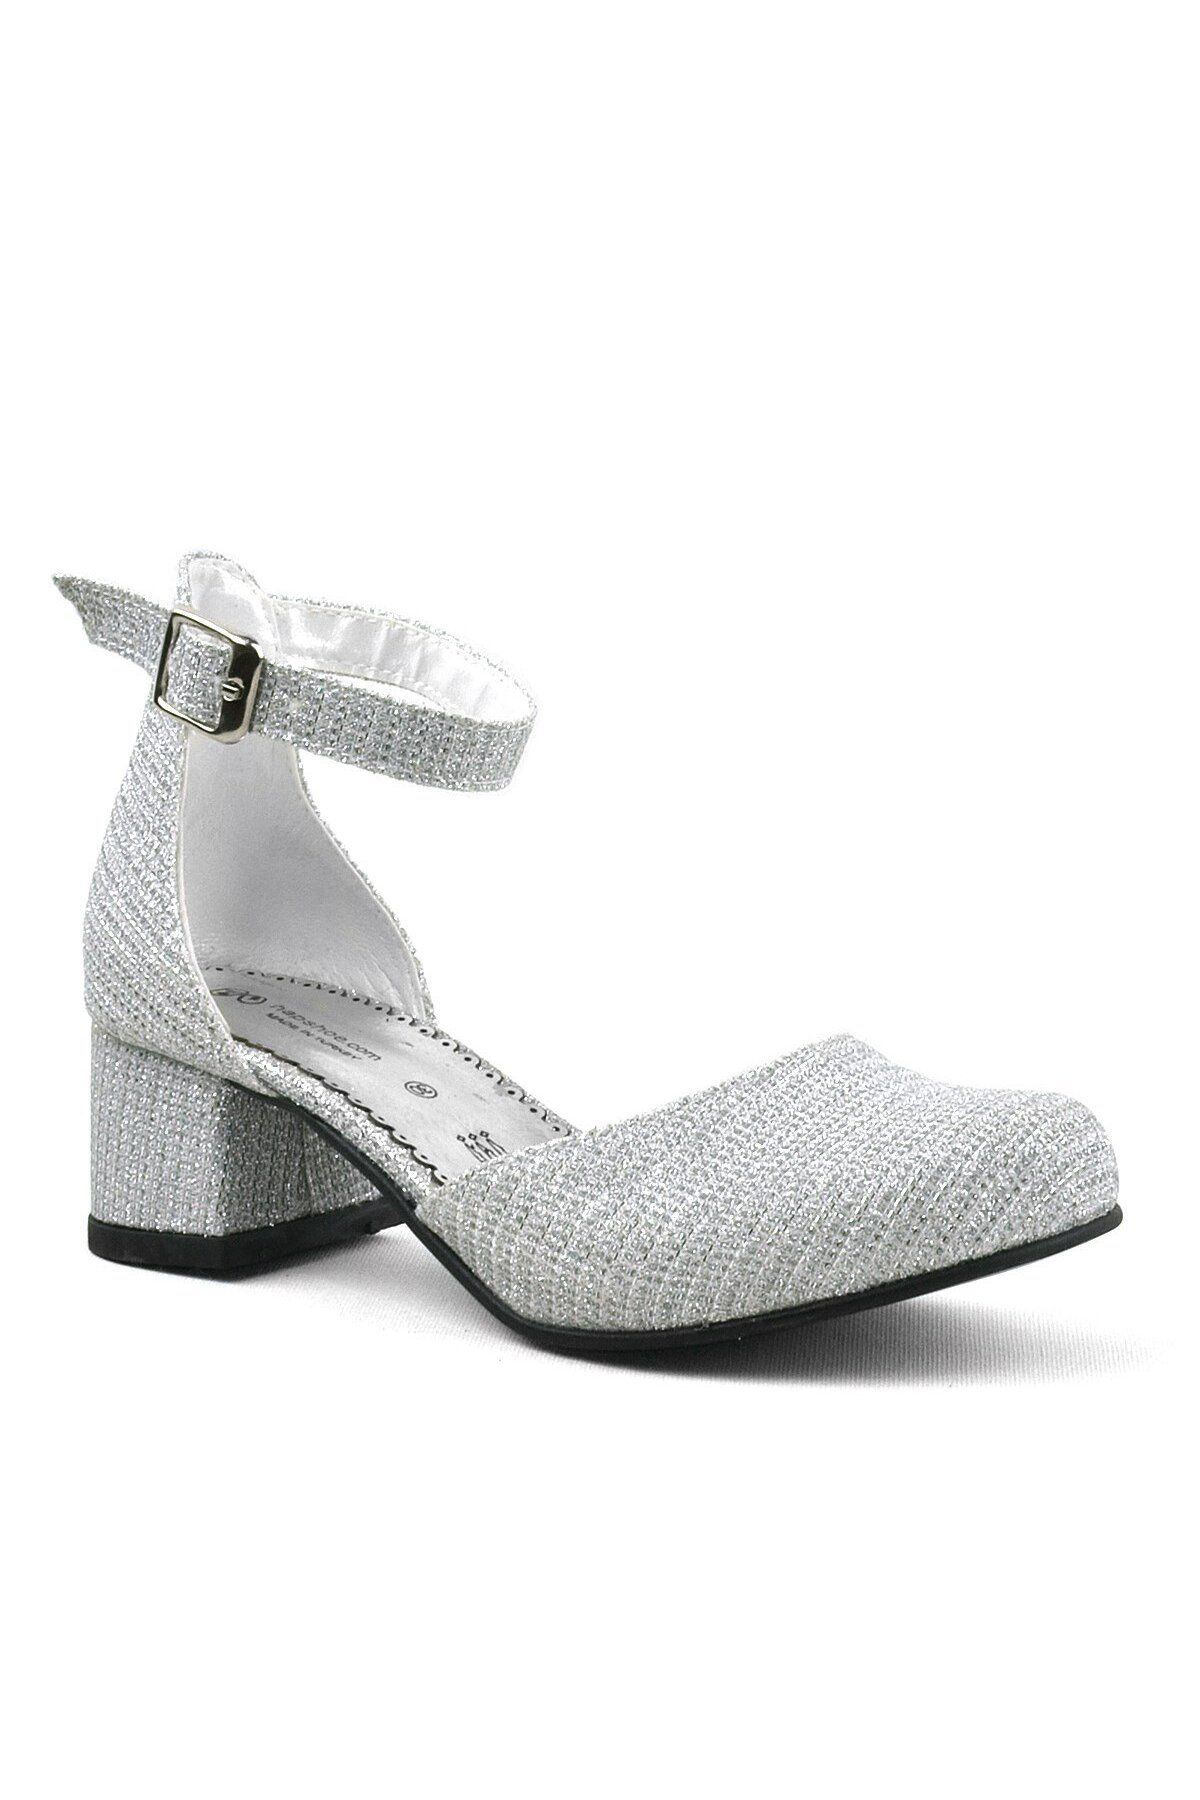 hapshoe Merida Gümüş Simli Kalın Topuklu Kız Çocuk Topuklu Ayakkabı